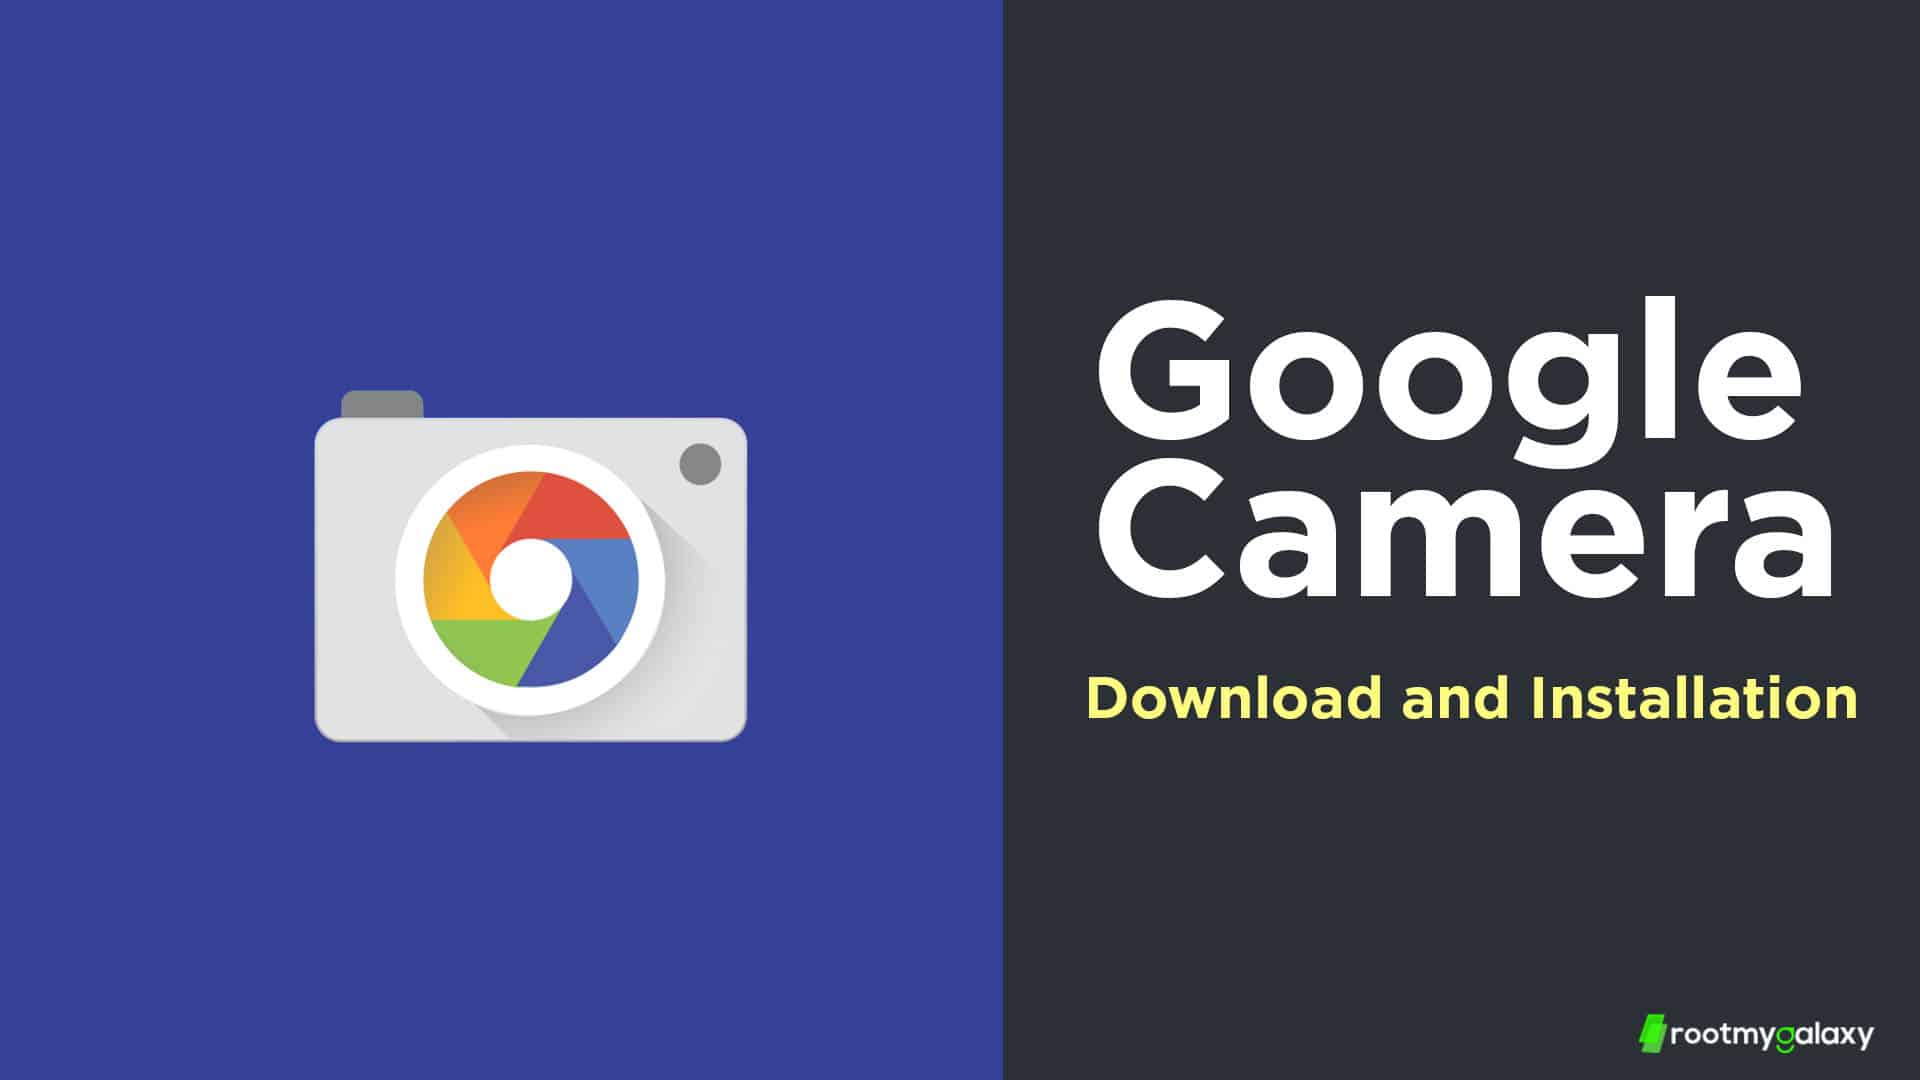 Download Google Camera 8.4 APK for Realme 9 Pro and Realme 9 Pro Plus